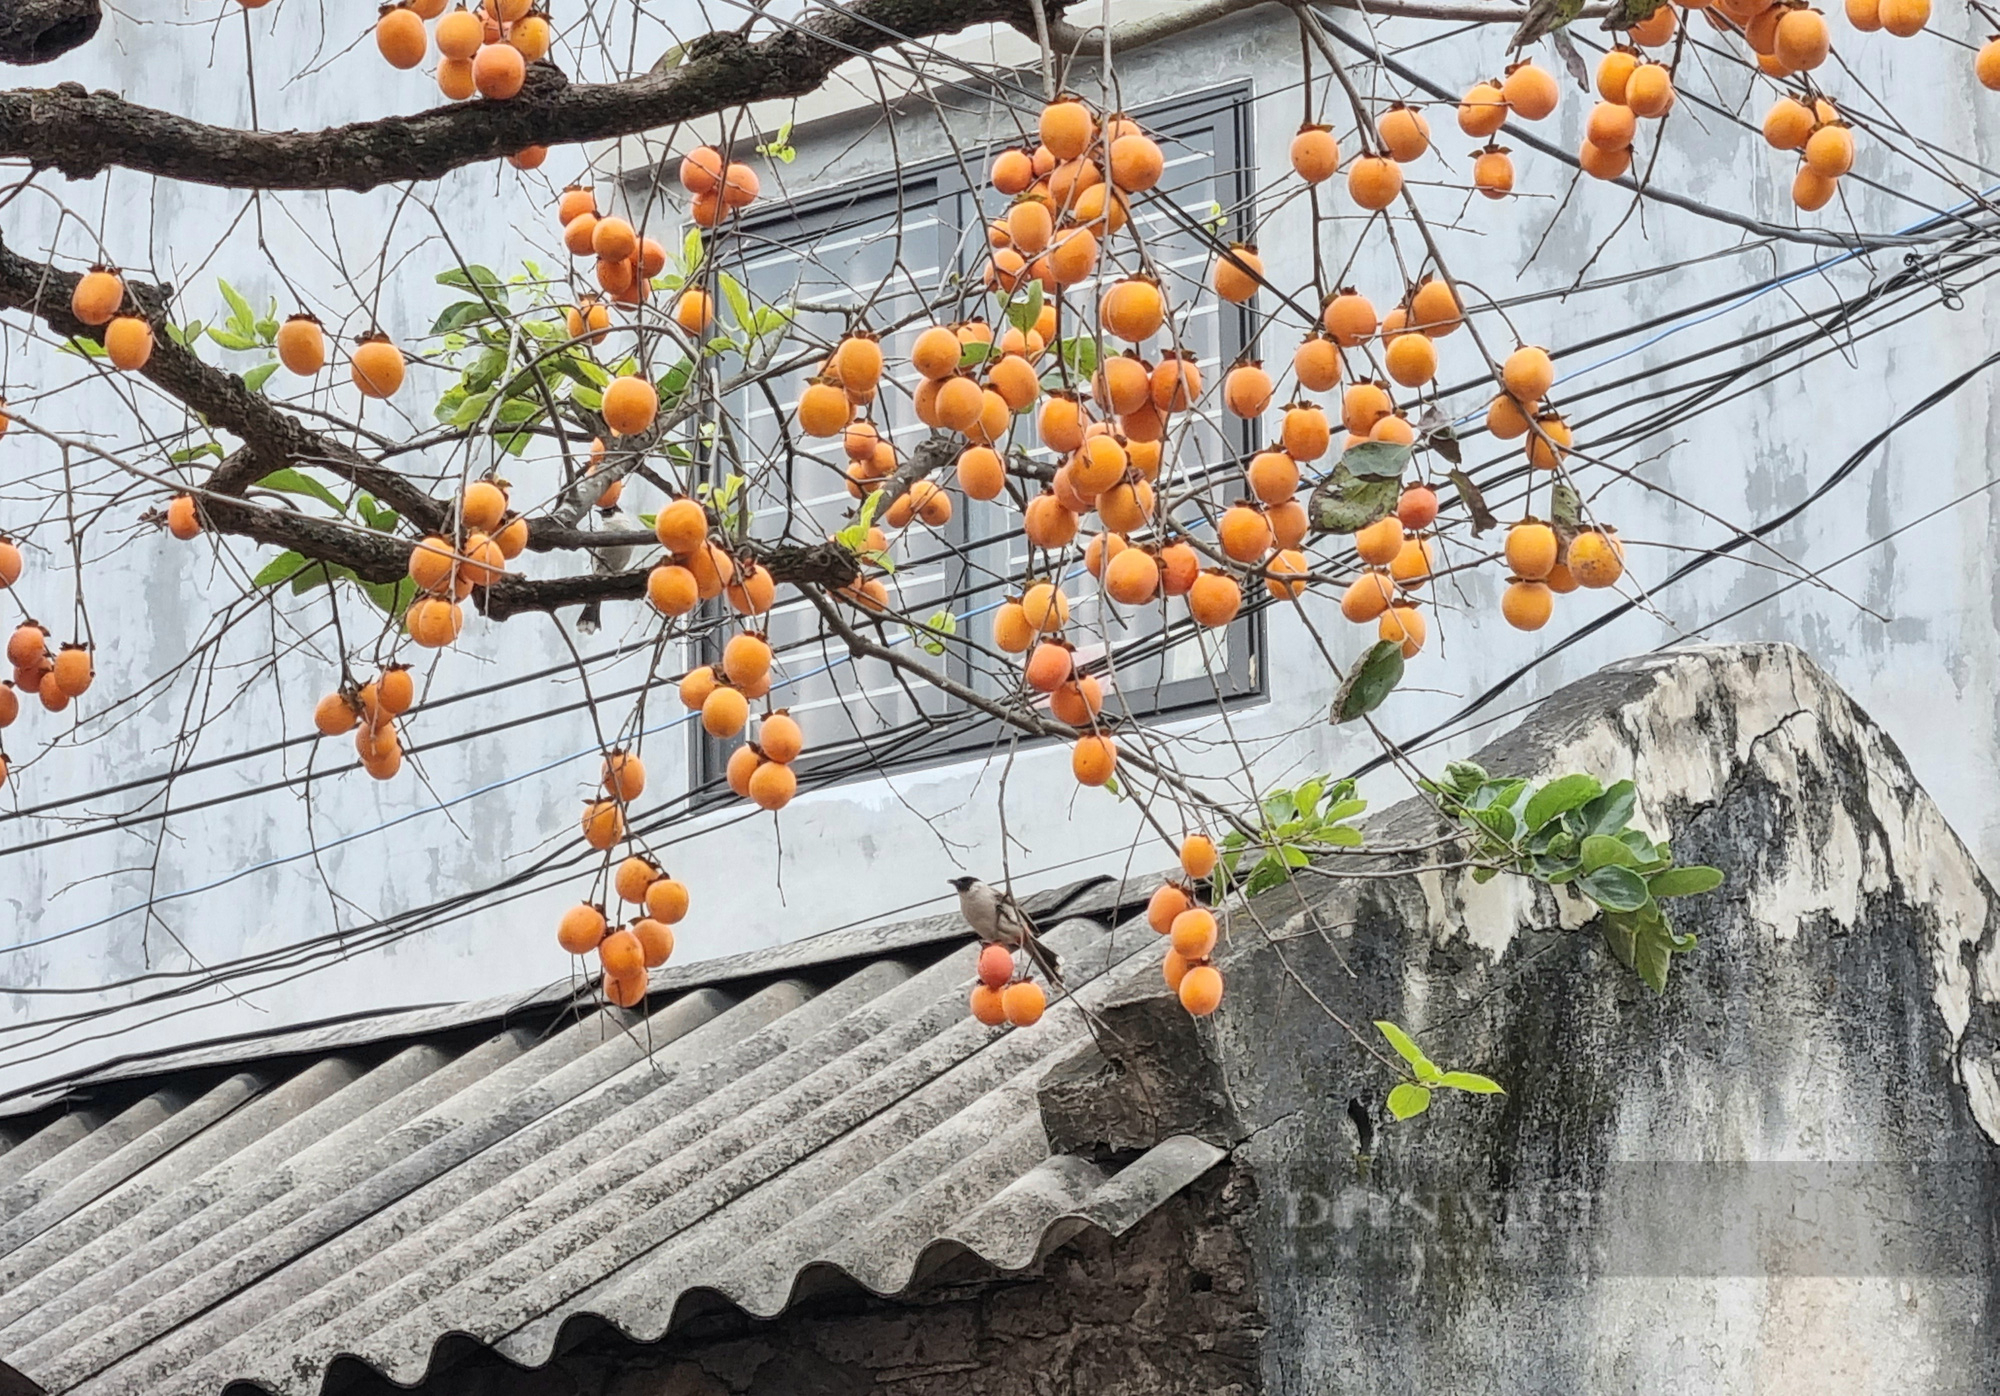 Chiêm ngưỡng cây hồng tuổi thọ gần 200 năm “độc nhất” tỉnh Ninh Bình - Ảnh 4.